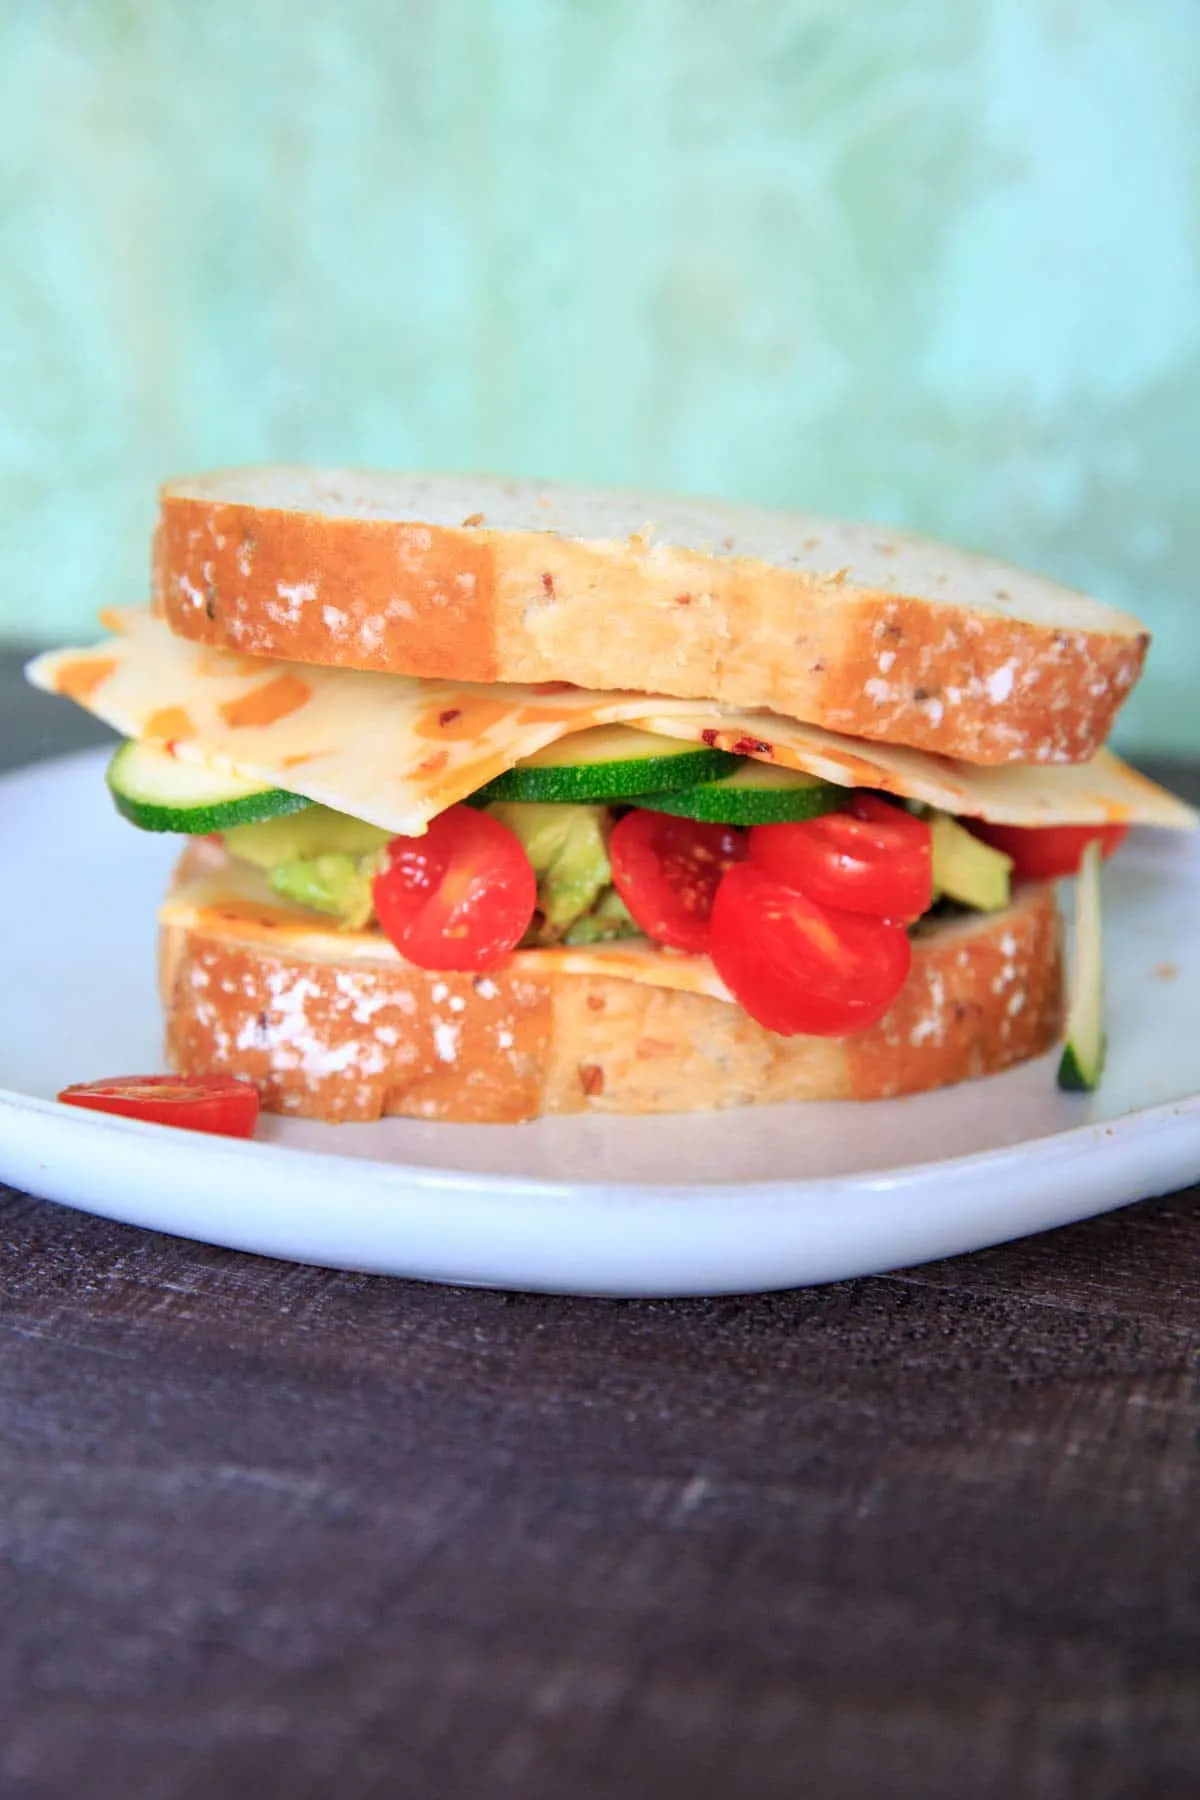 Sargento Cheese Slices Zucchini Sandwich